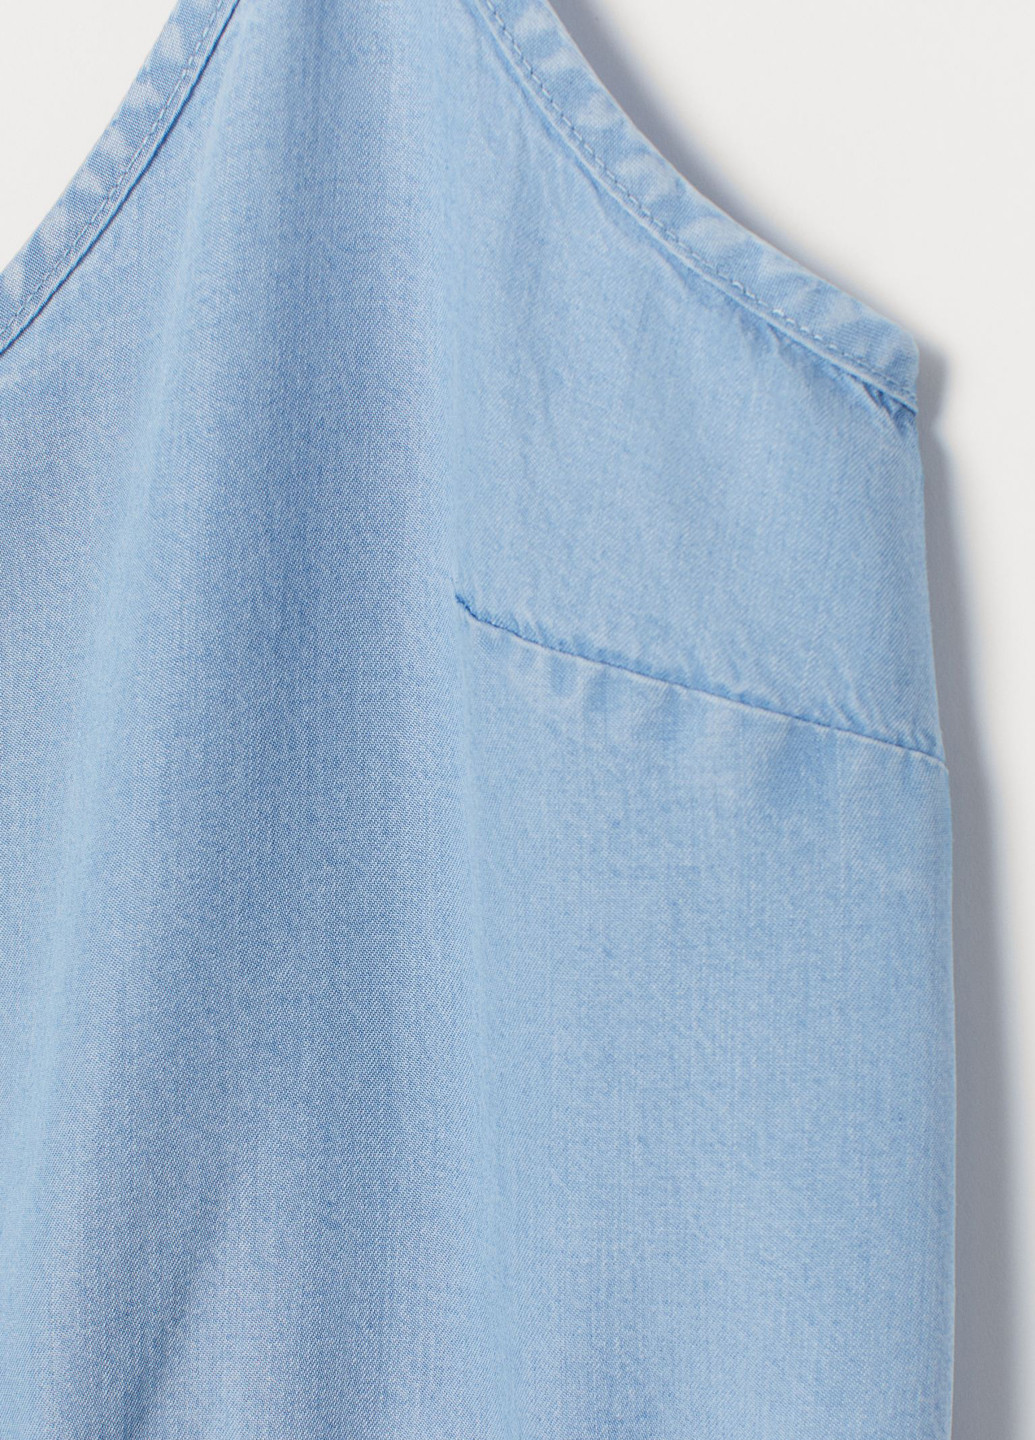 Комбинезон H&M комбинезон-шорты однотонный голубой денил лиоцелл